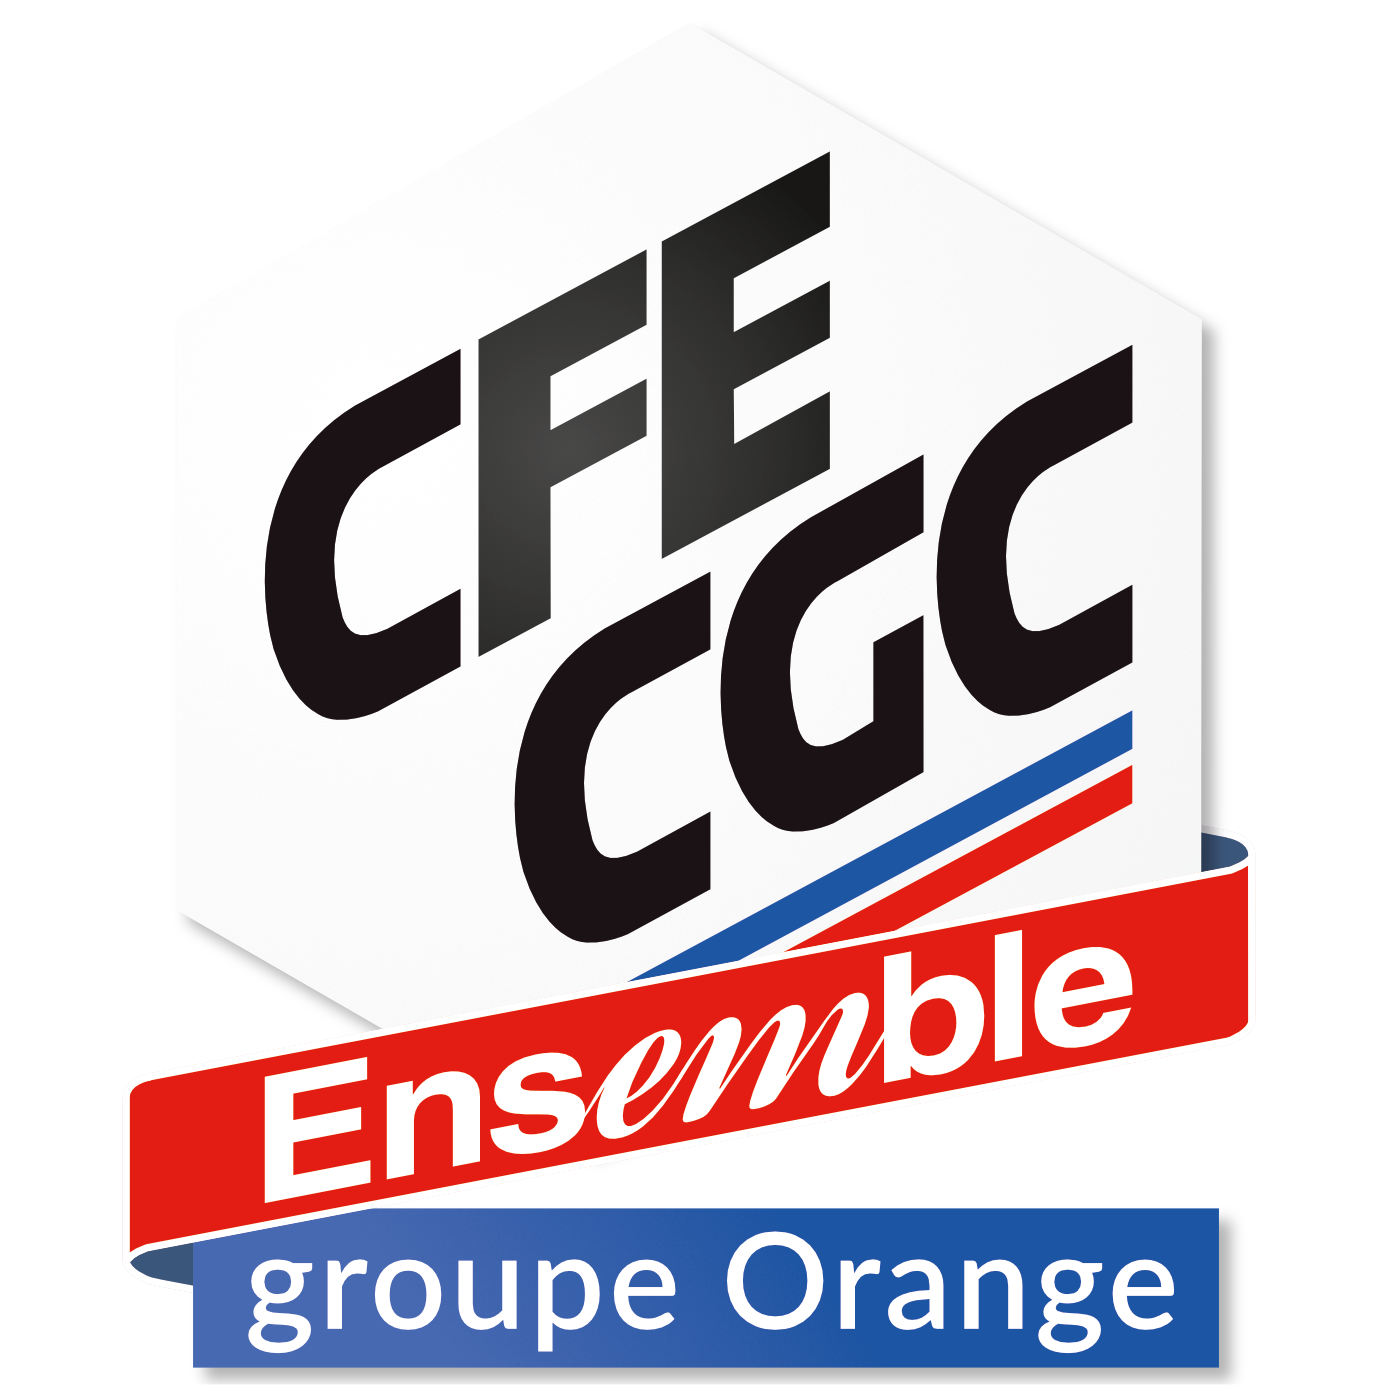 CFE-CGC groupe Orange